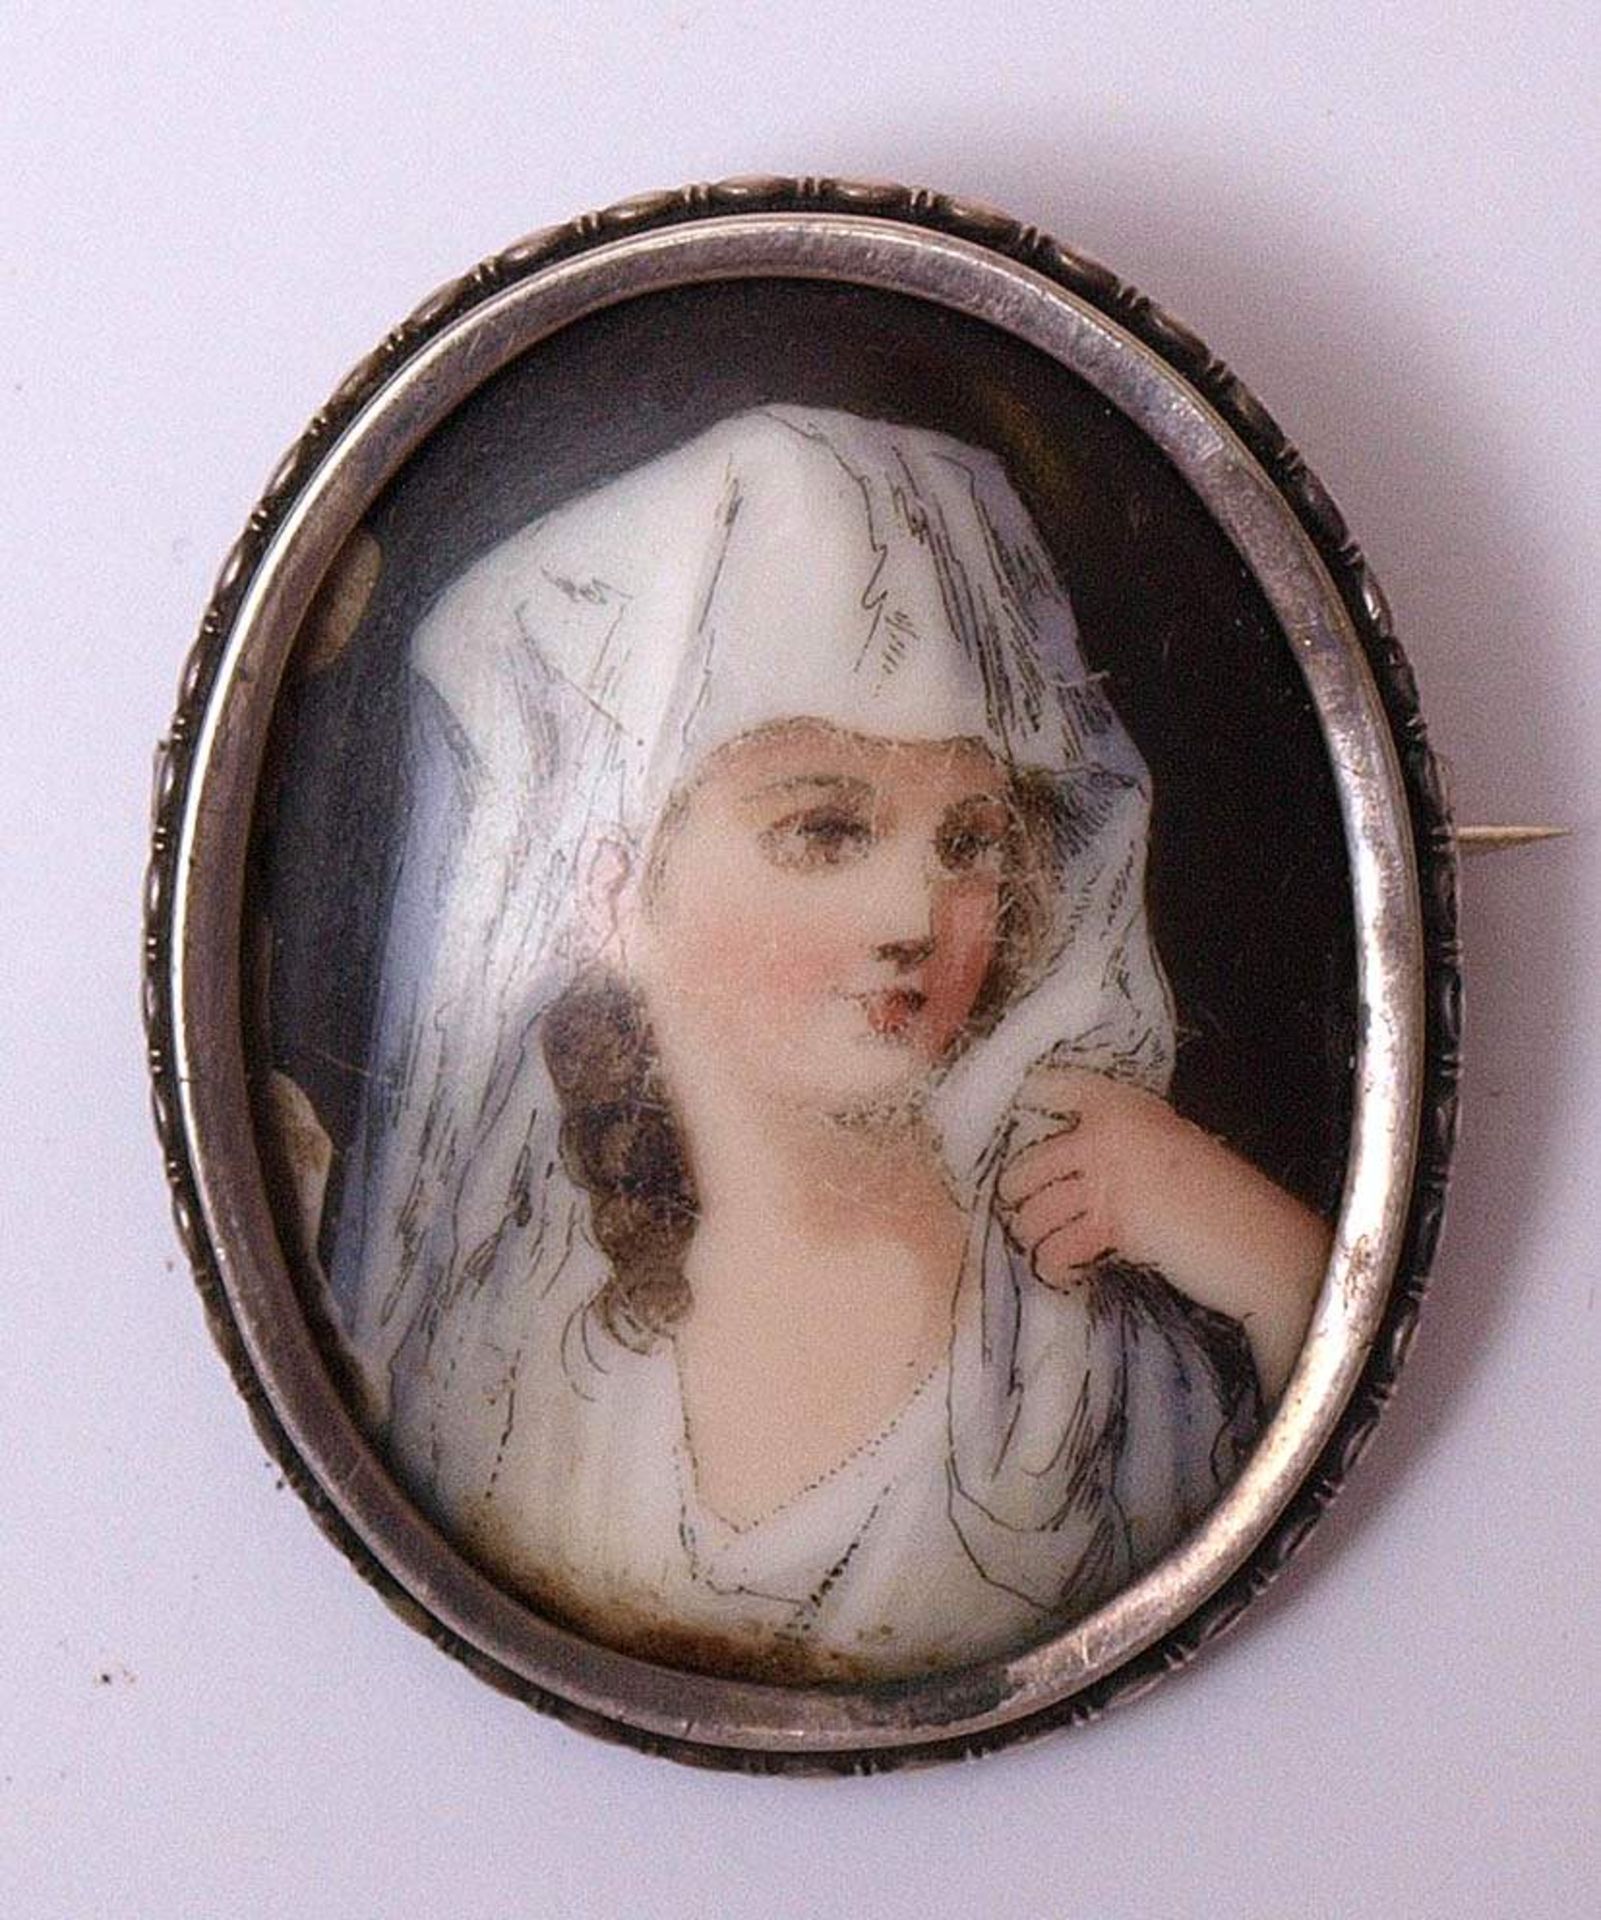 PorzellanminiaturBrustbild einer Schleier tragenden jungen Frau. In reliefierter Silberfassung als